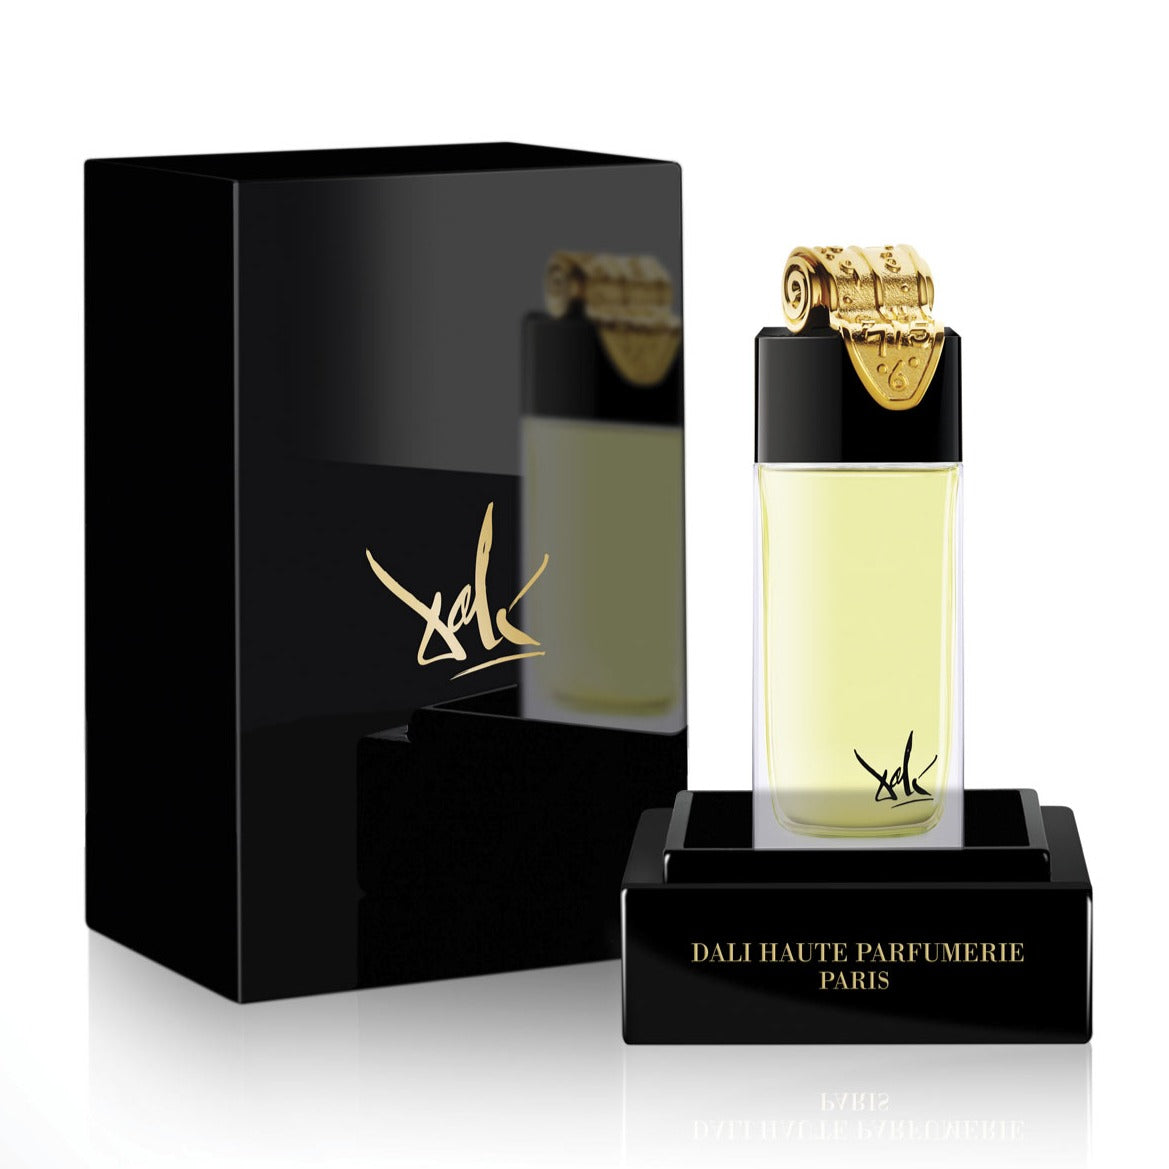 Fluidite du Temps Imaginaire (The Clock) 100ml Eau de Parfum Bottle and Box by Dalí Haute Parfumerie